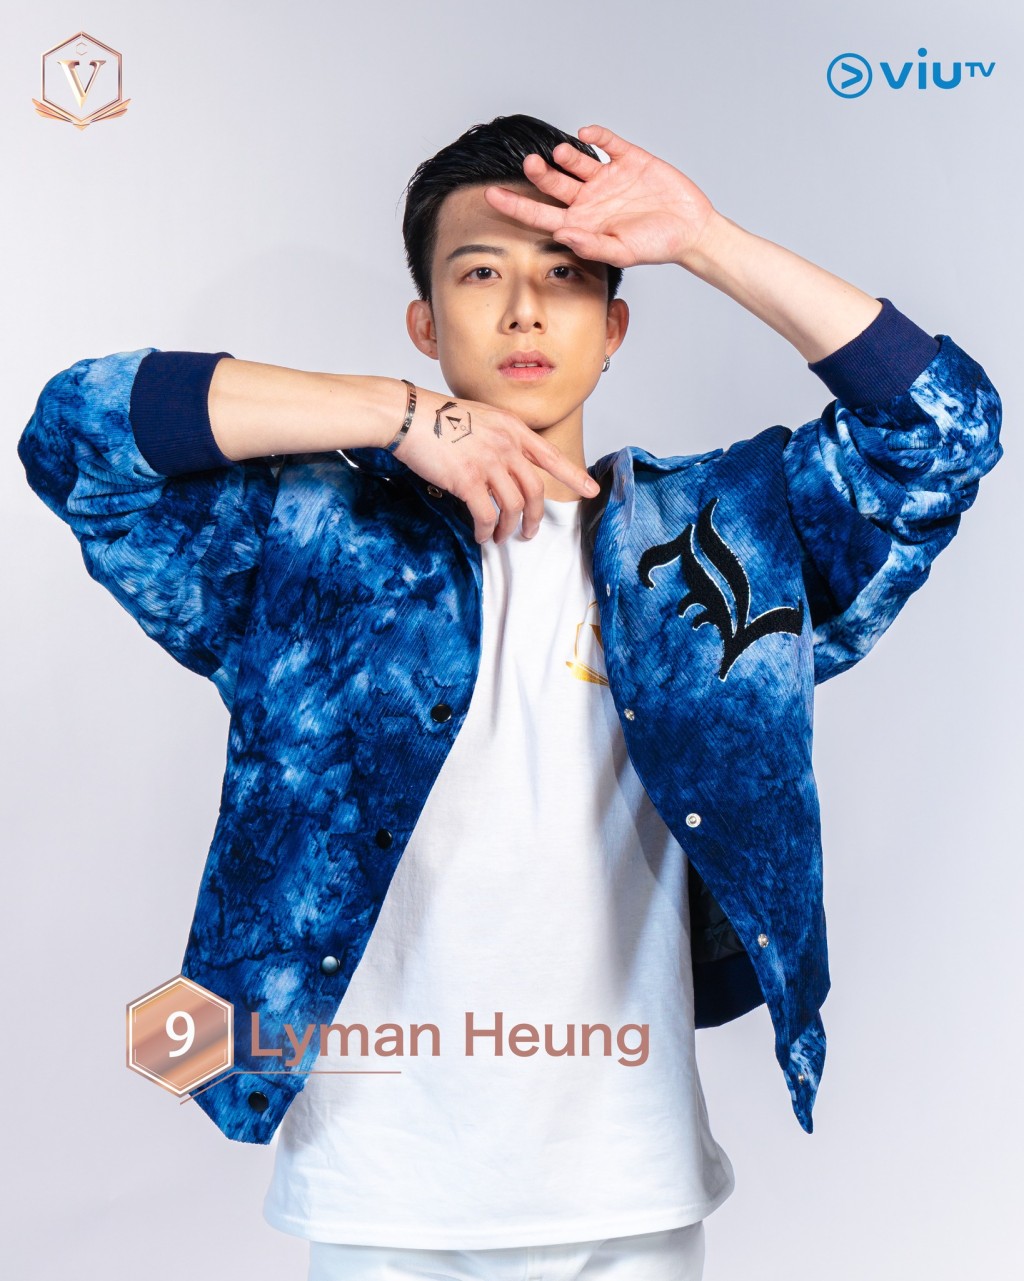 胤宅（Lyman Heung） 年齡： 32 職業：標準舞、拉丁舞 導師 擅長：跳舞、戲劇 IG：lyman.heung #溫哥華參賽者